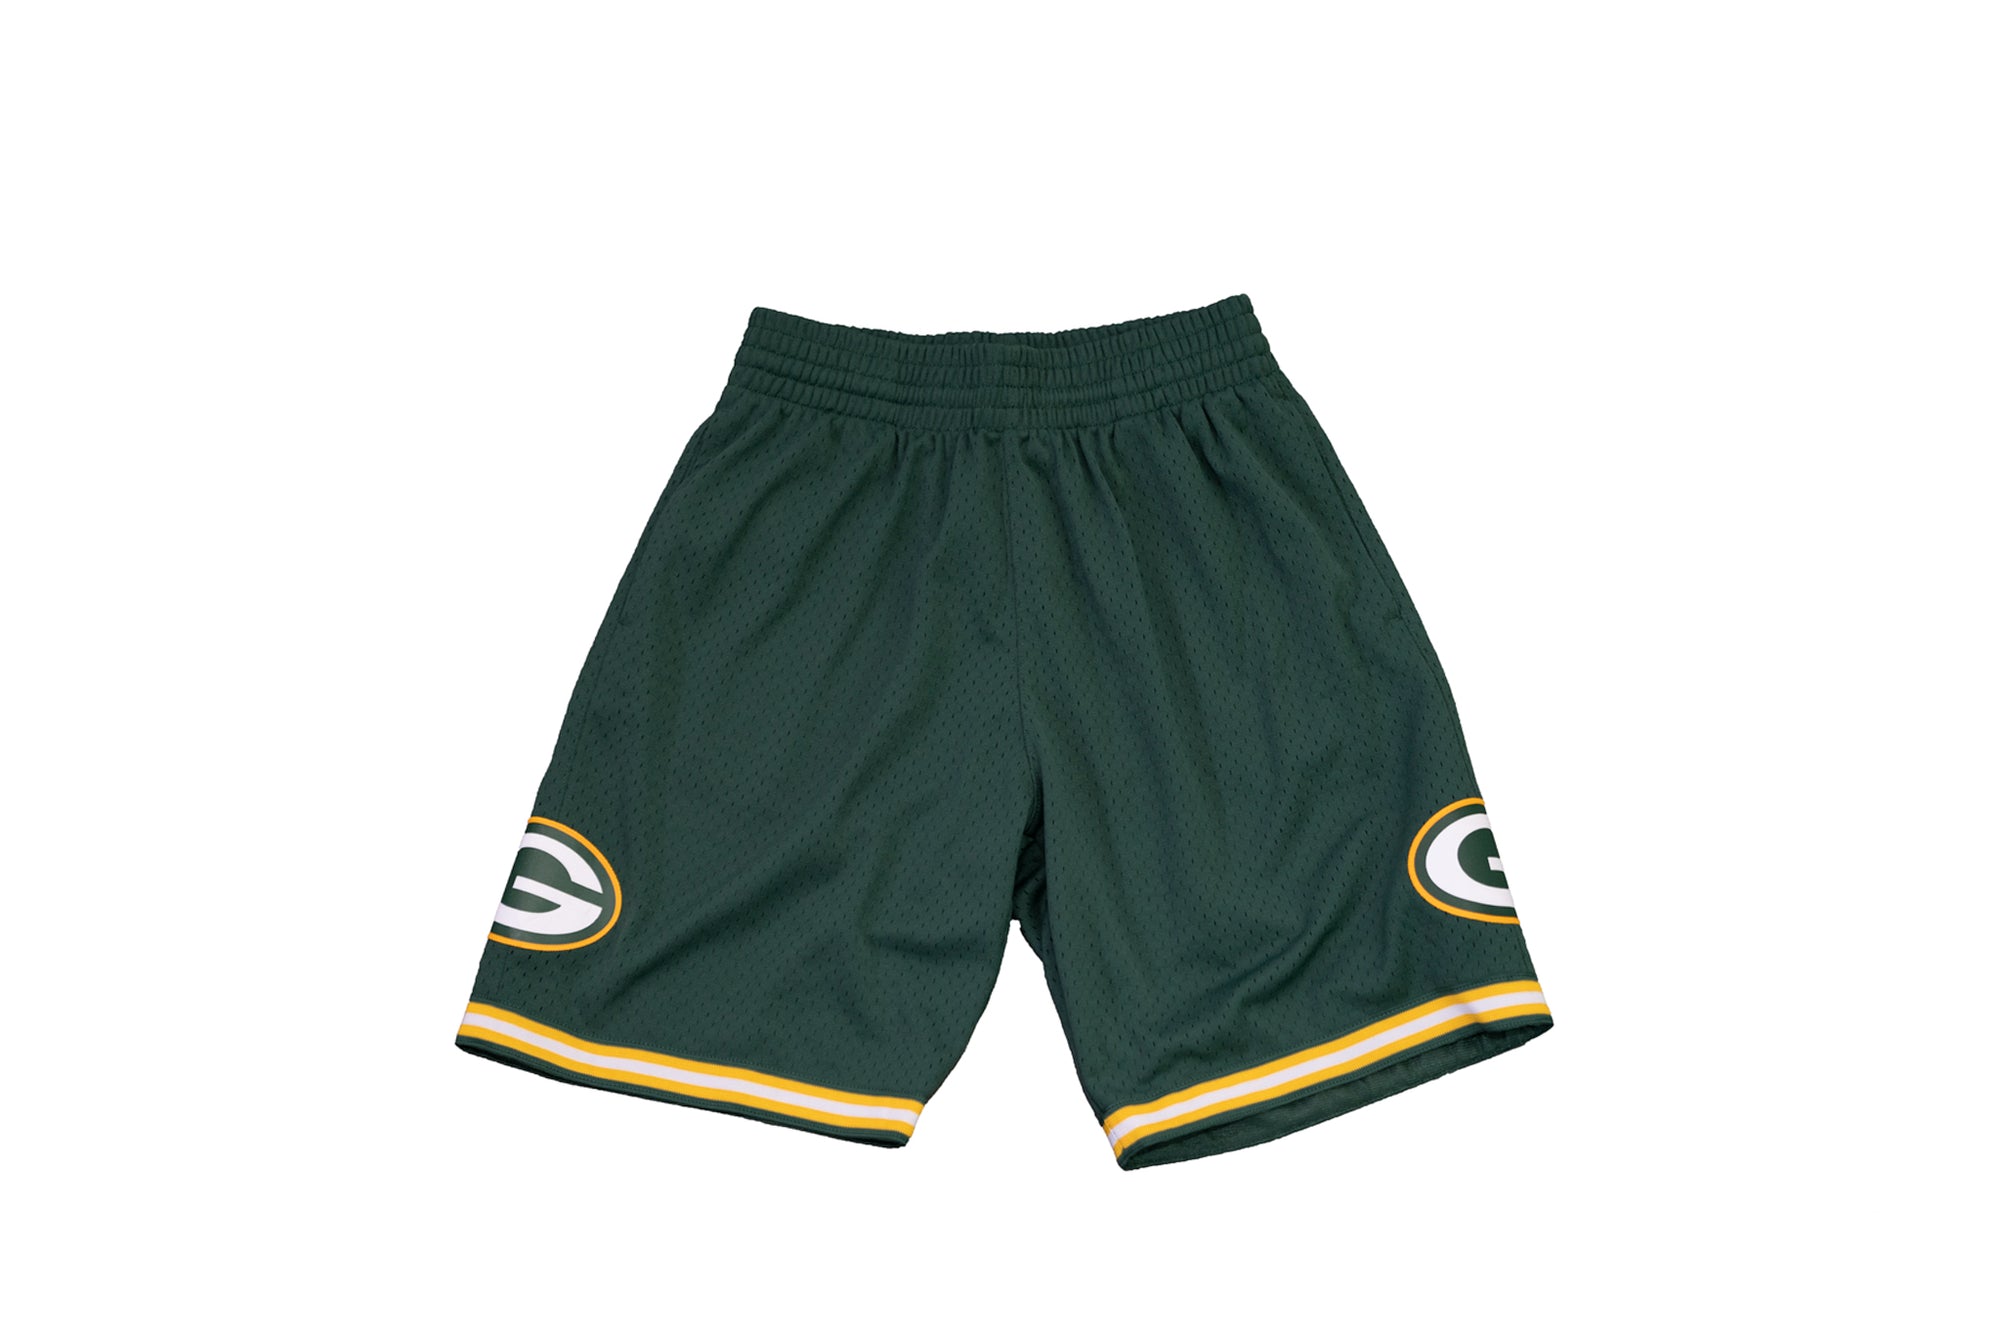 green bay packers shorts mens